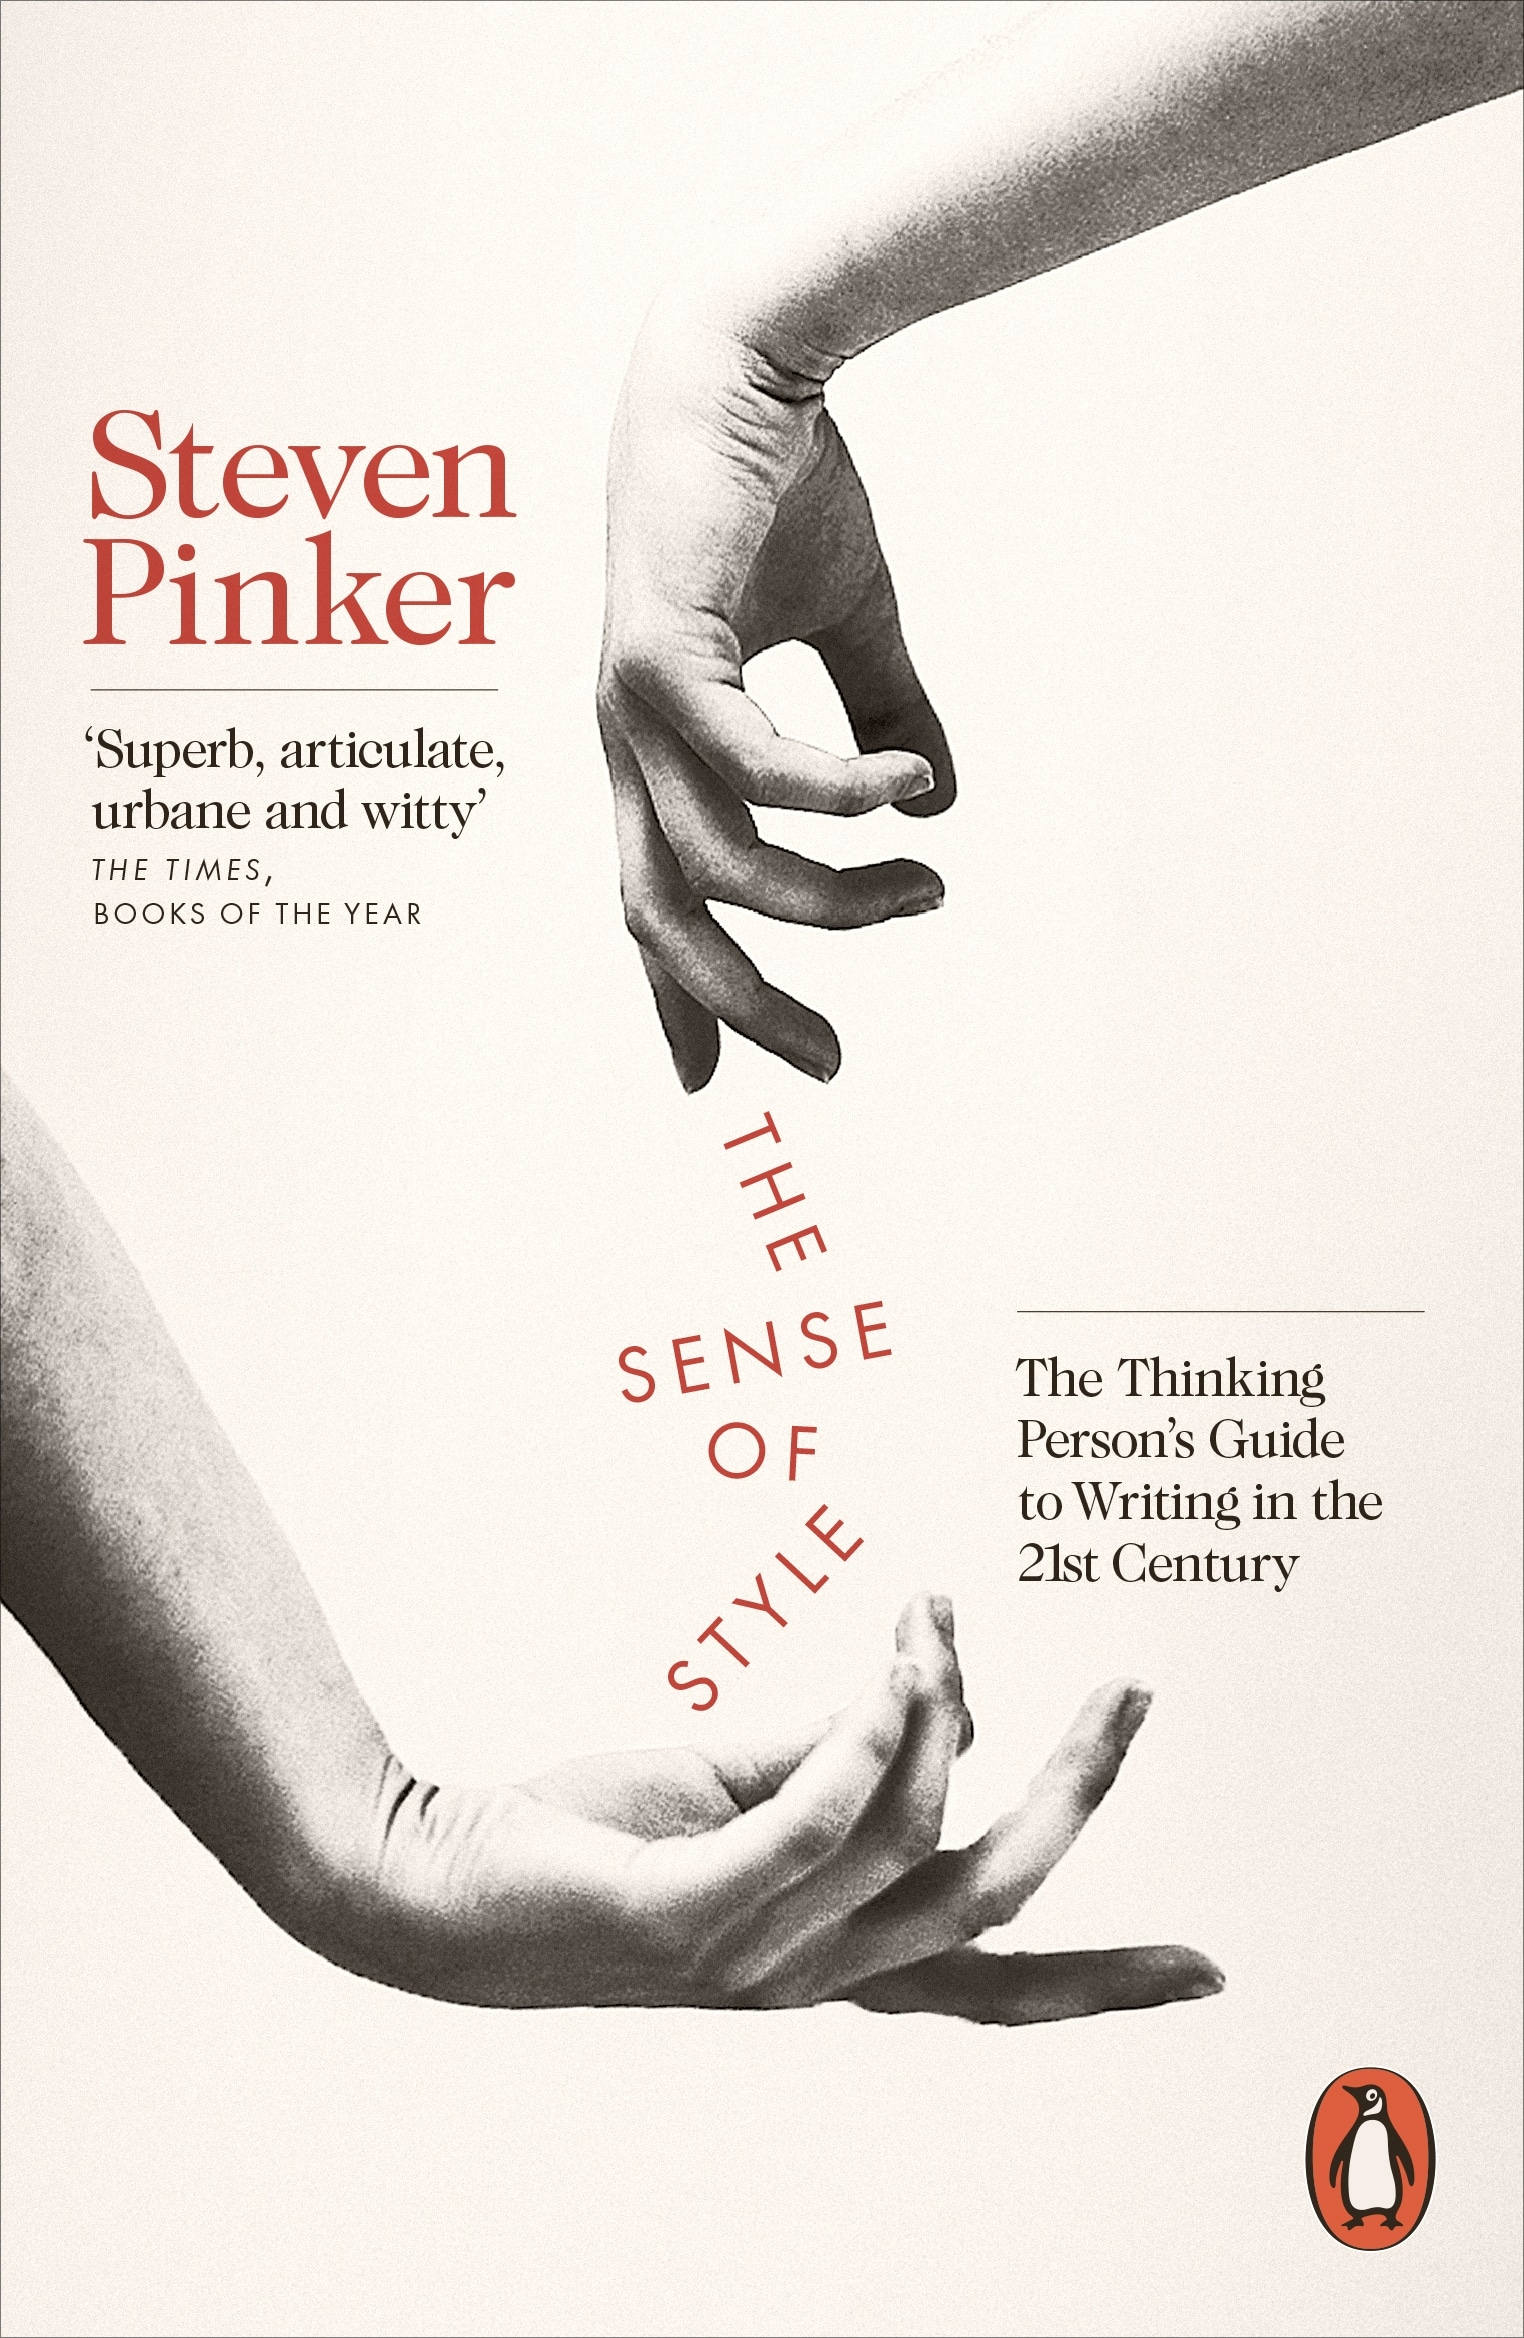 Book “The Sense of Style” by Steven Pinker — September 3, 2015